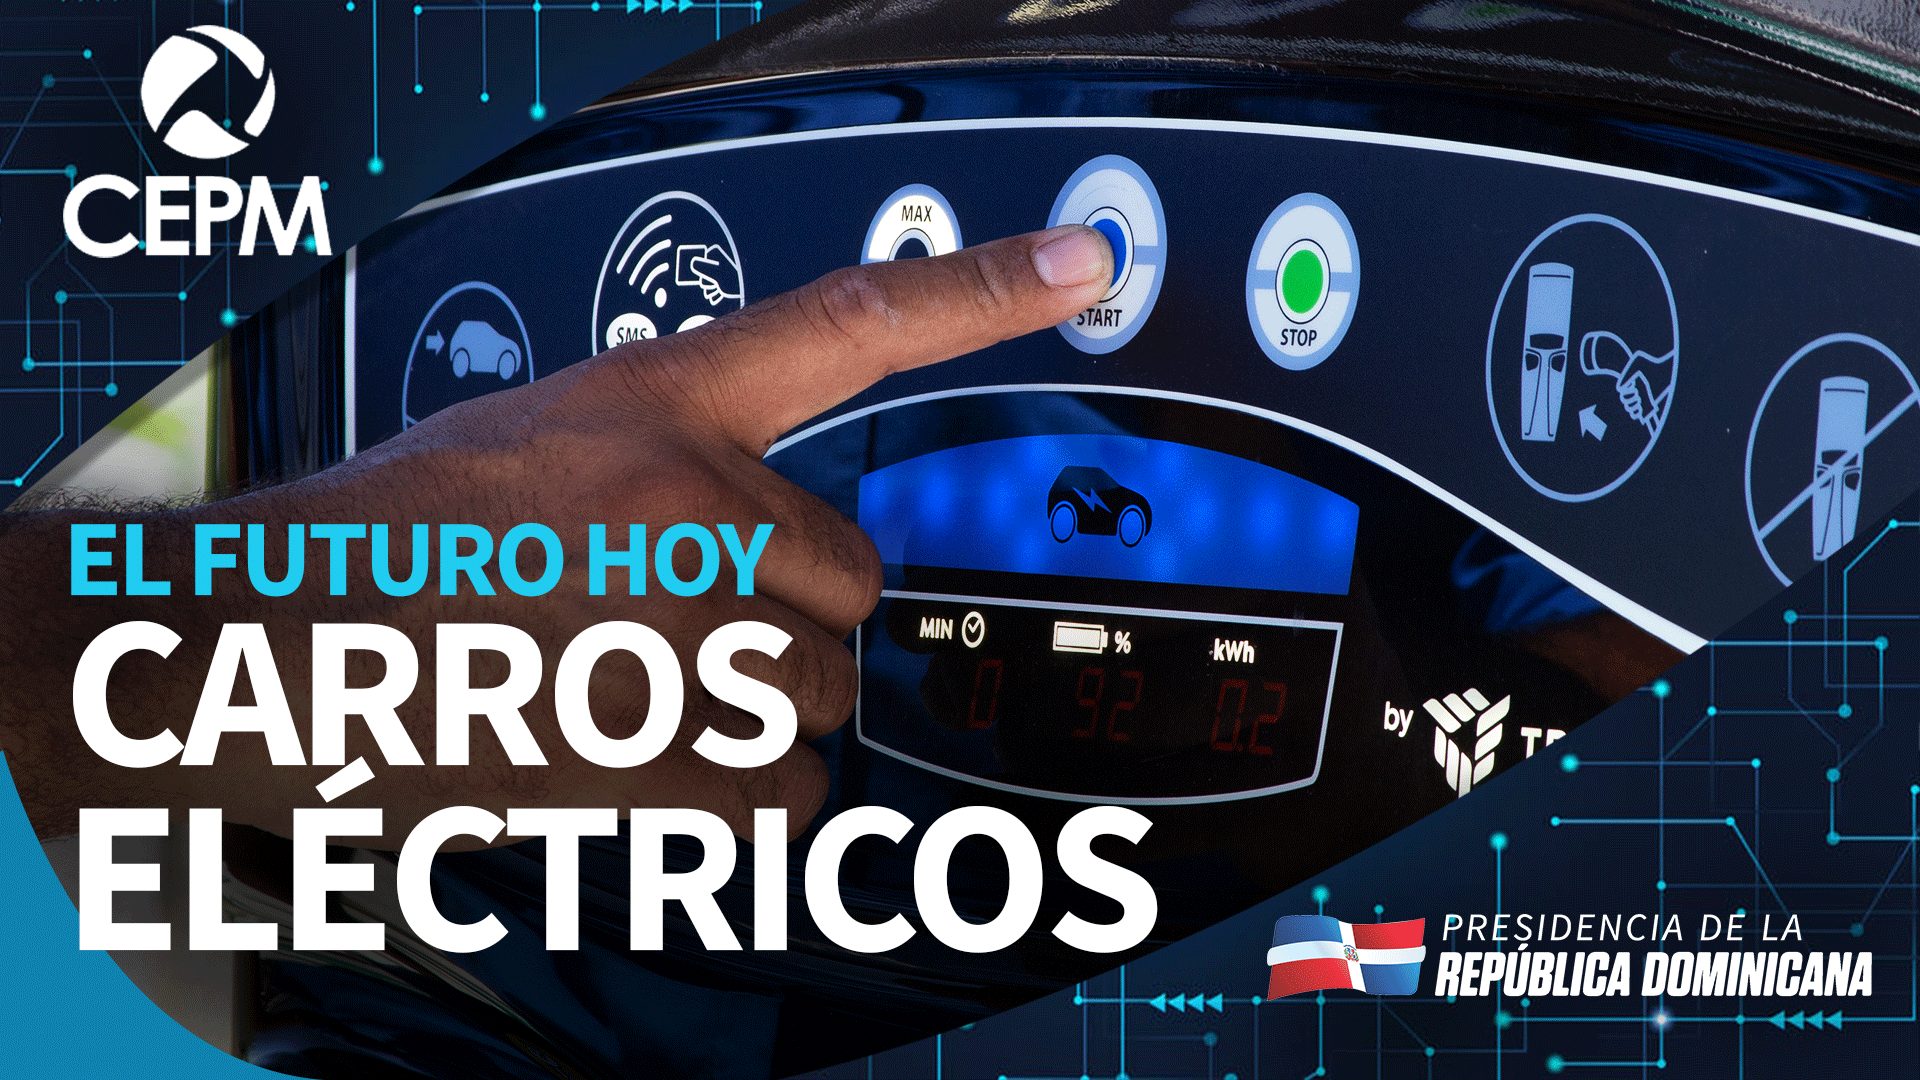 REPÚBLICA DOMINICANA: El futuro hoy: Los Carros Eléctricos son una realidad.